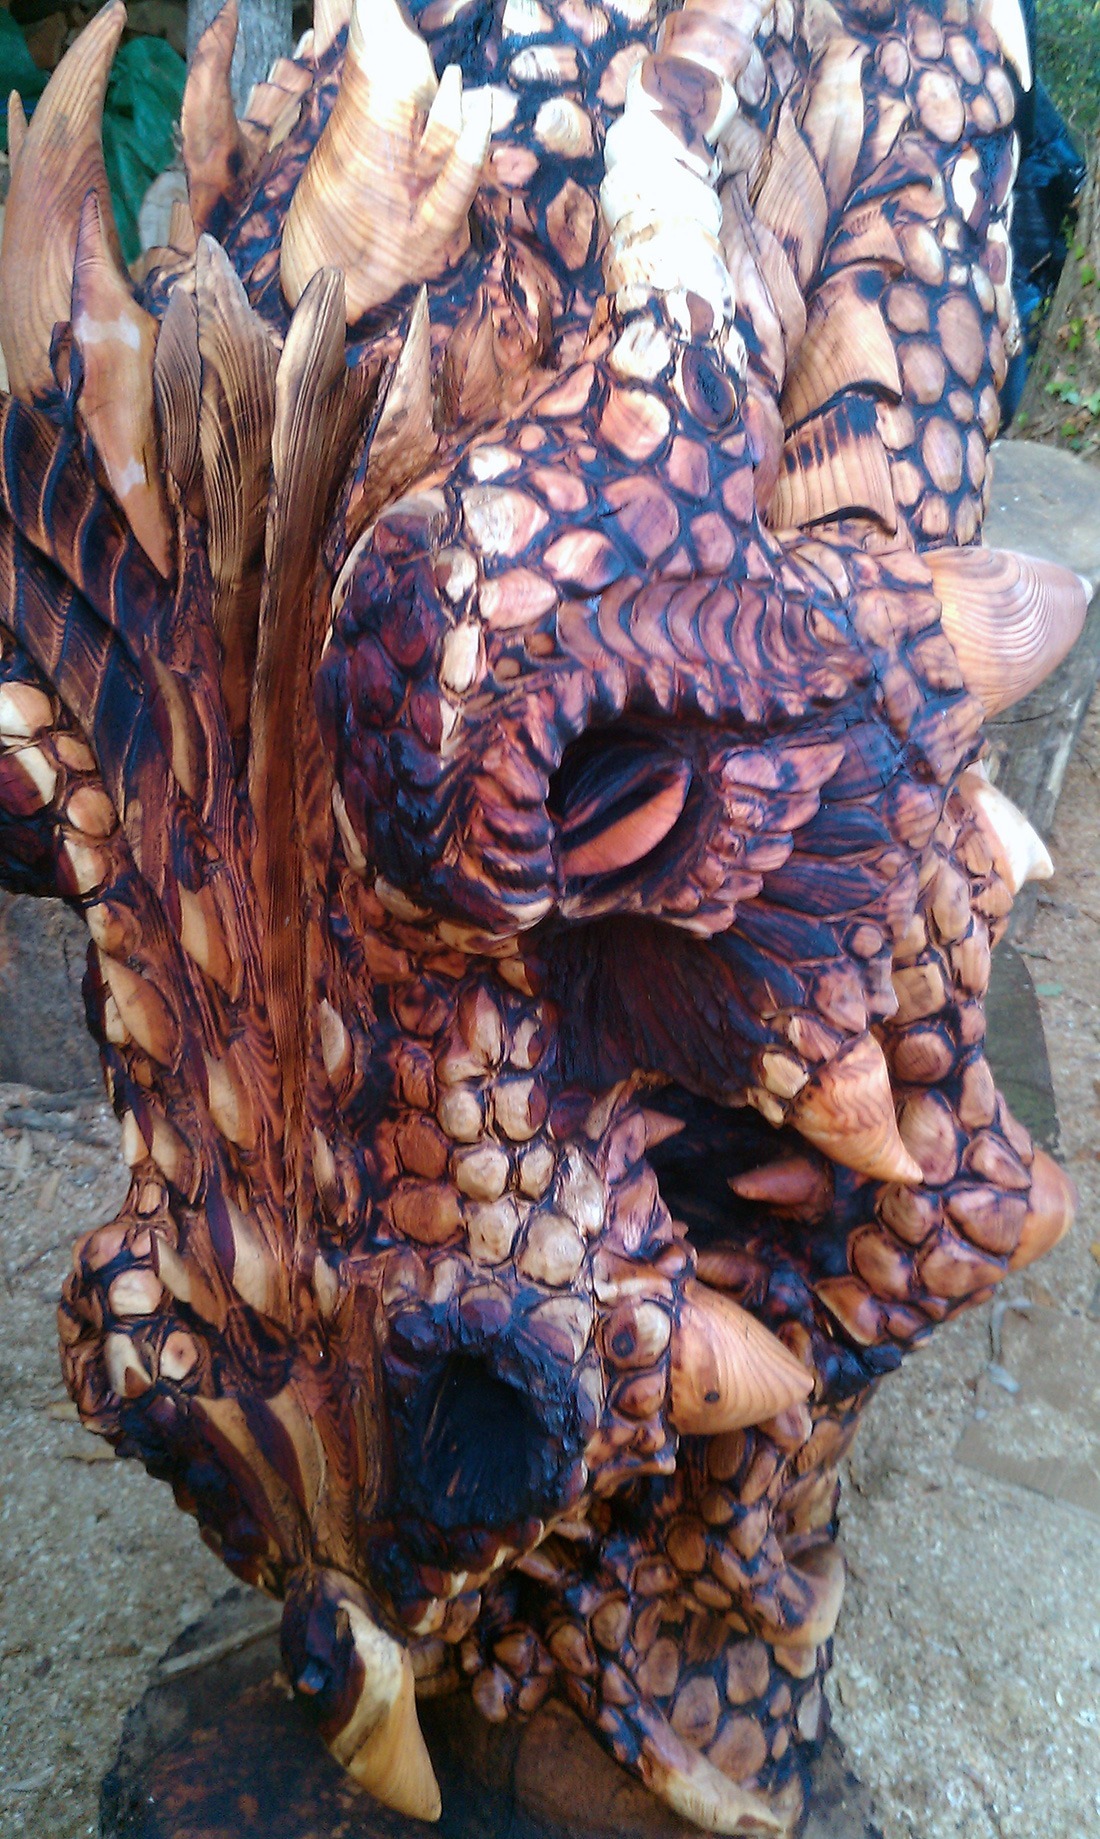 Detailed dragon head